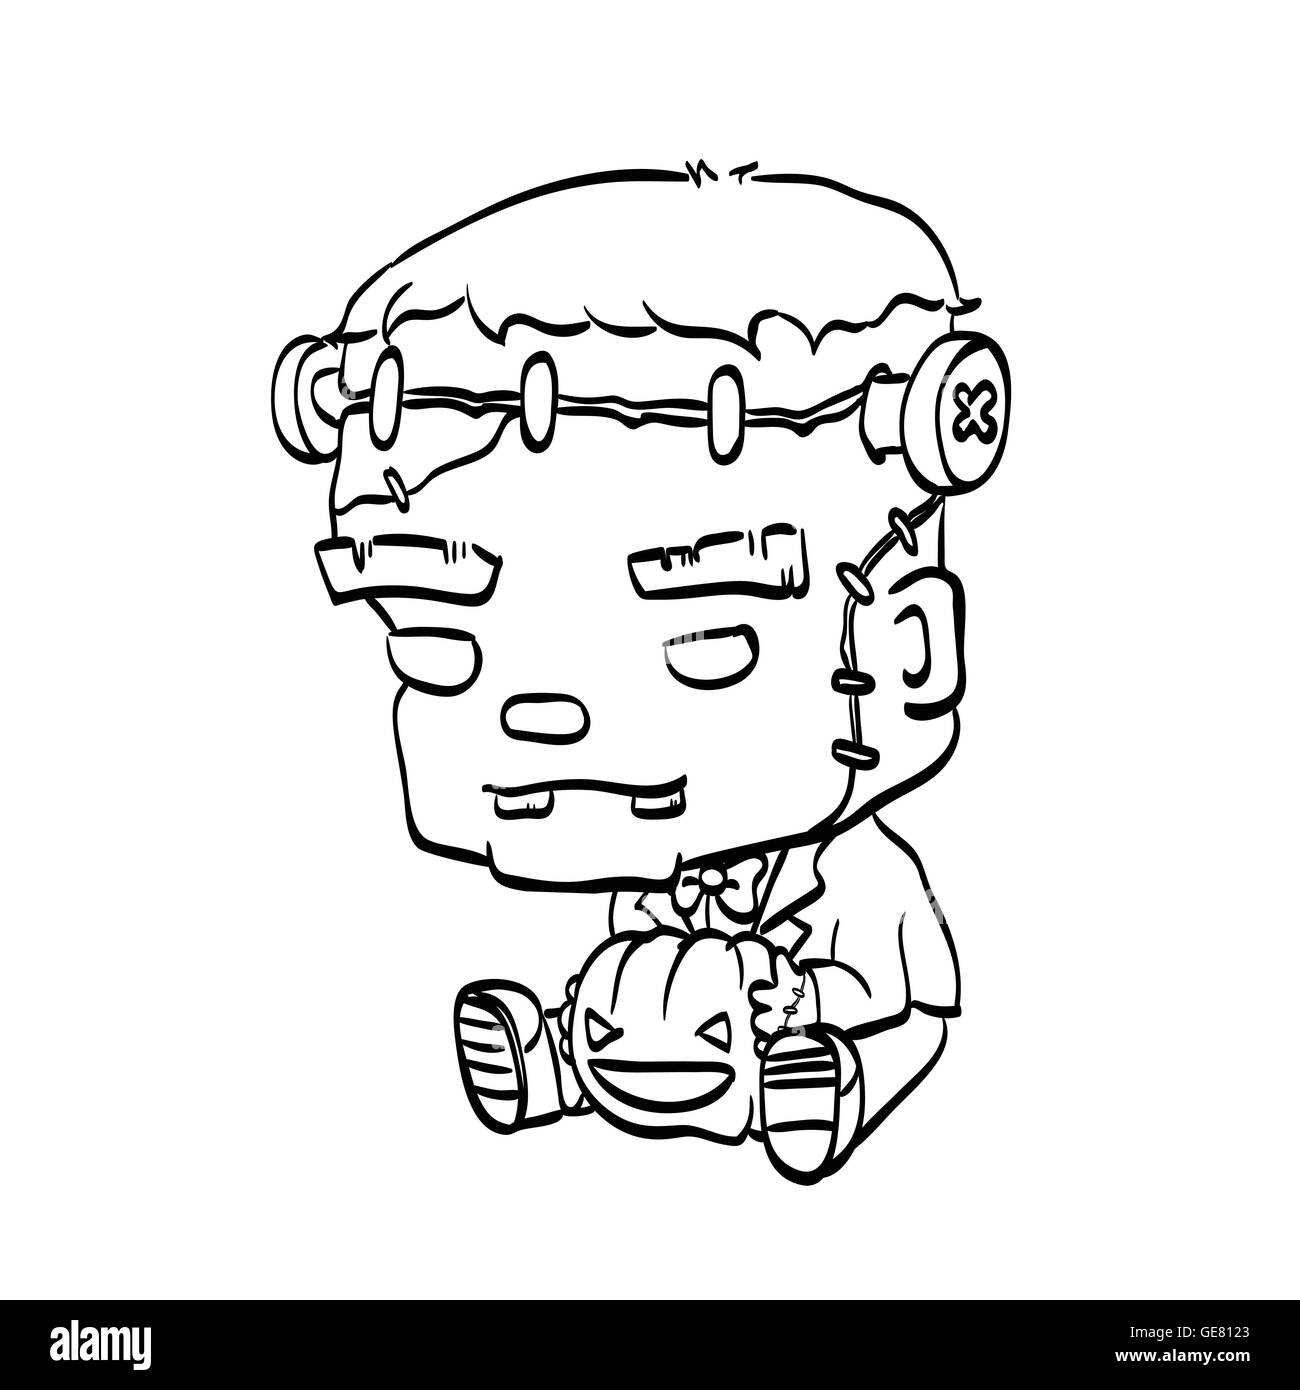 Vektor-Illustration von niedlichen Cartoon Charakter Frankenstein mit Jack O' Lantern Gliederung zum Ausmalen Stock Vektor